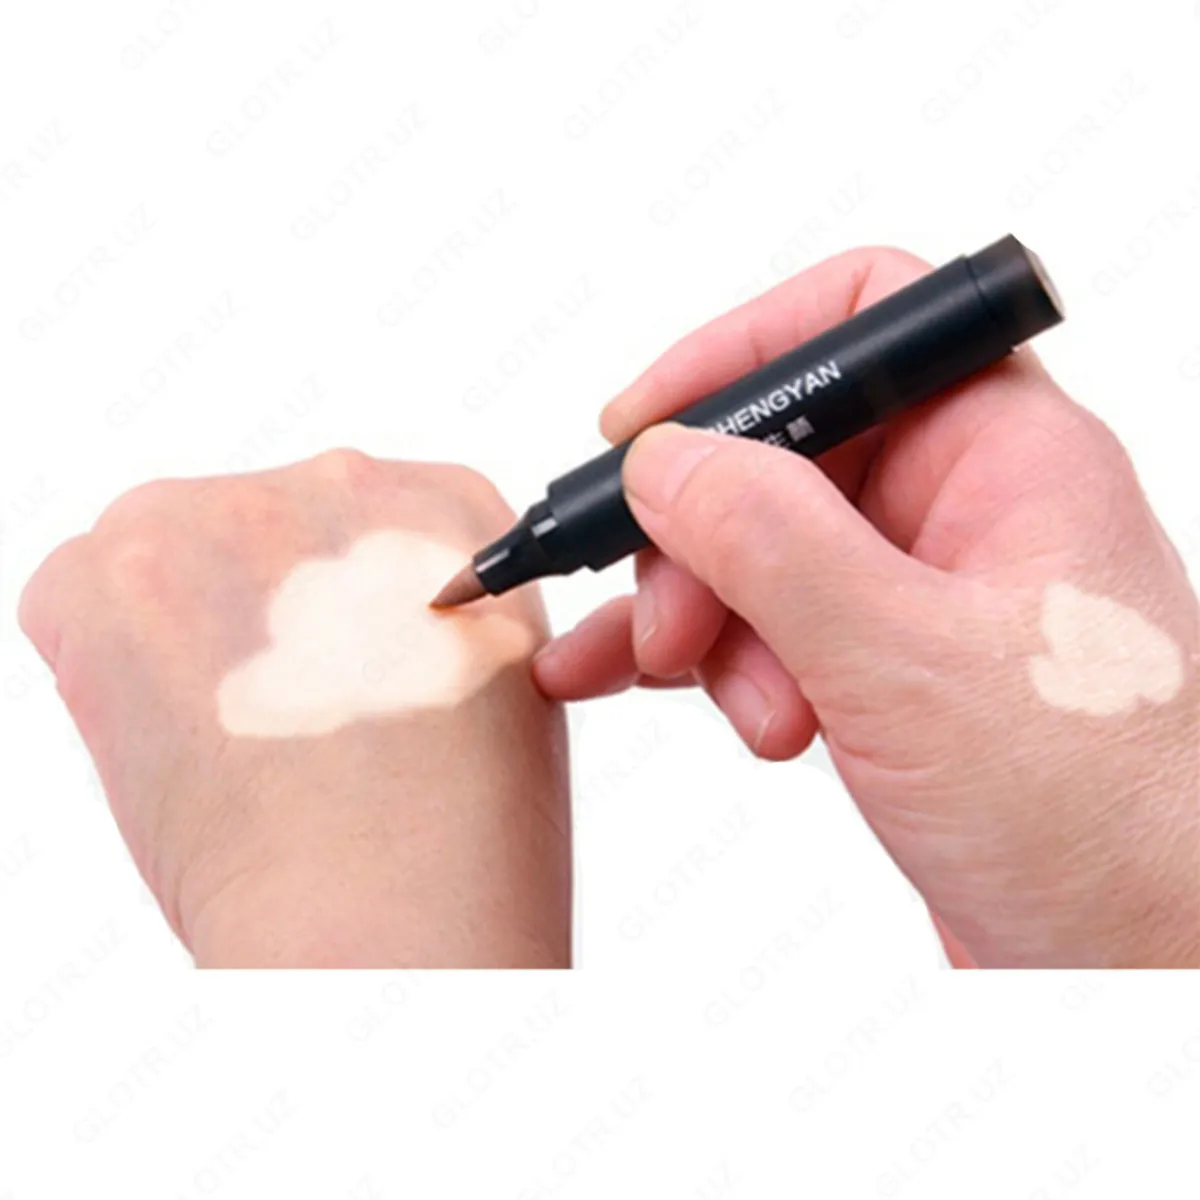 Zanderm spot vitiligo uchun aplikatori#4